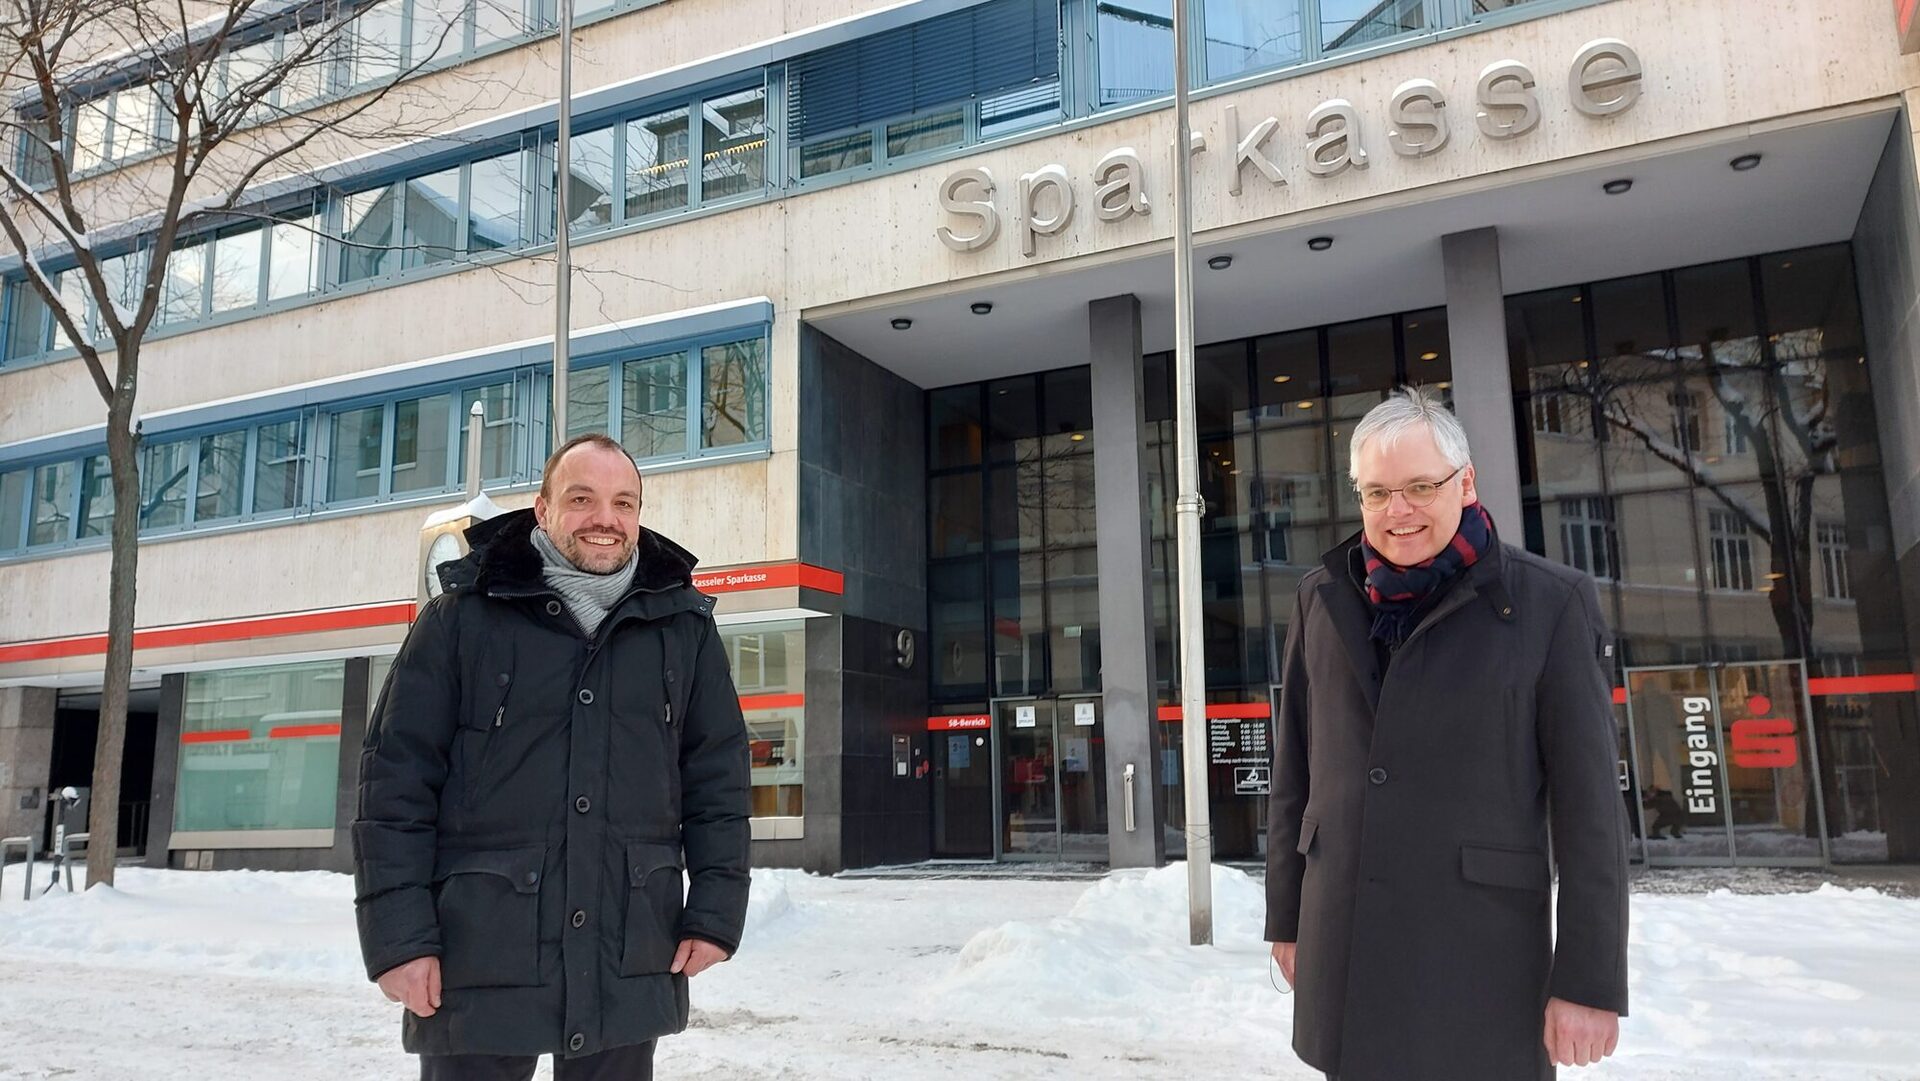 Oberbürgermeister Christian Geselle (links) und Ingo Buchholz, Vorstandsvorsitzender Kasseler Sparkasse, vor dem Gebäude an der Wolfsschlucht.